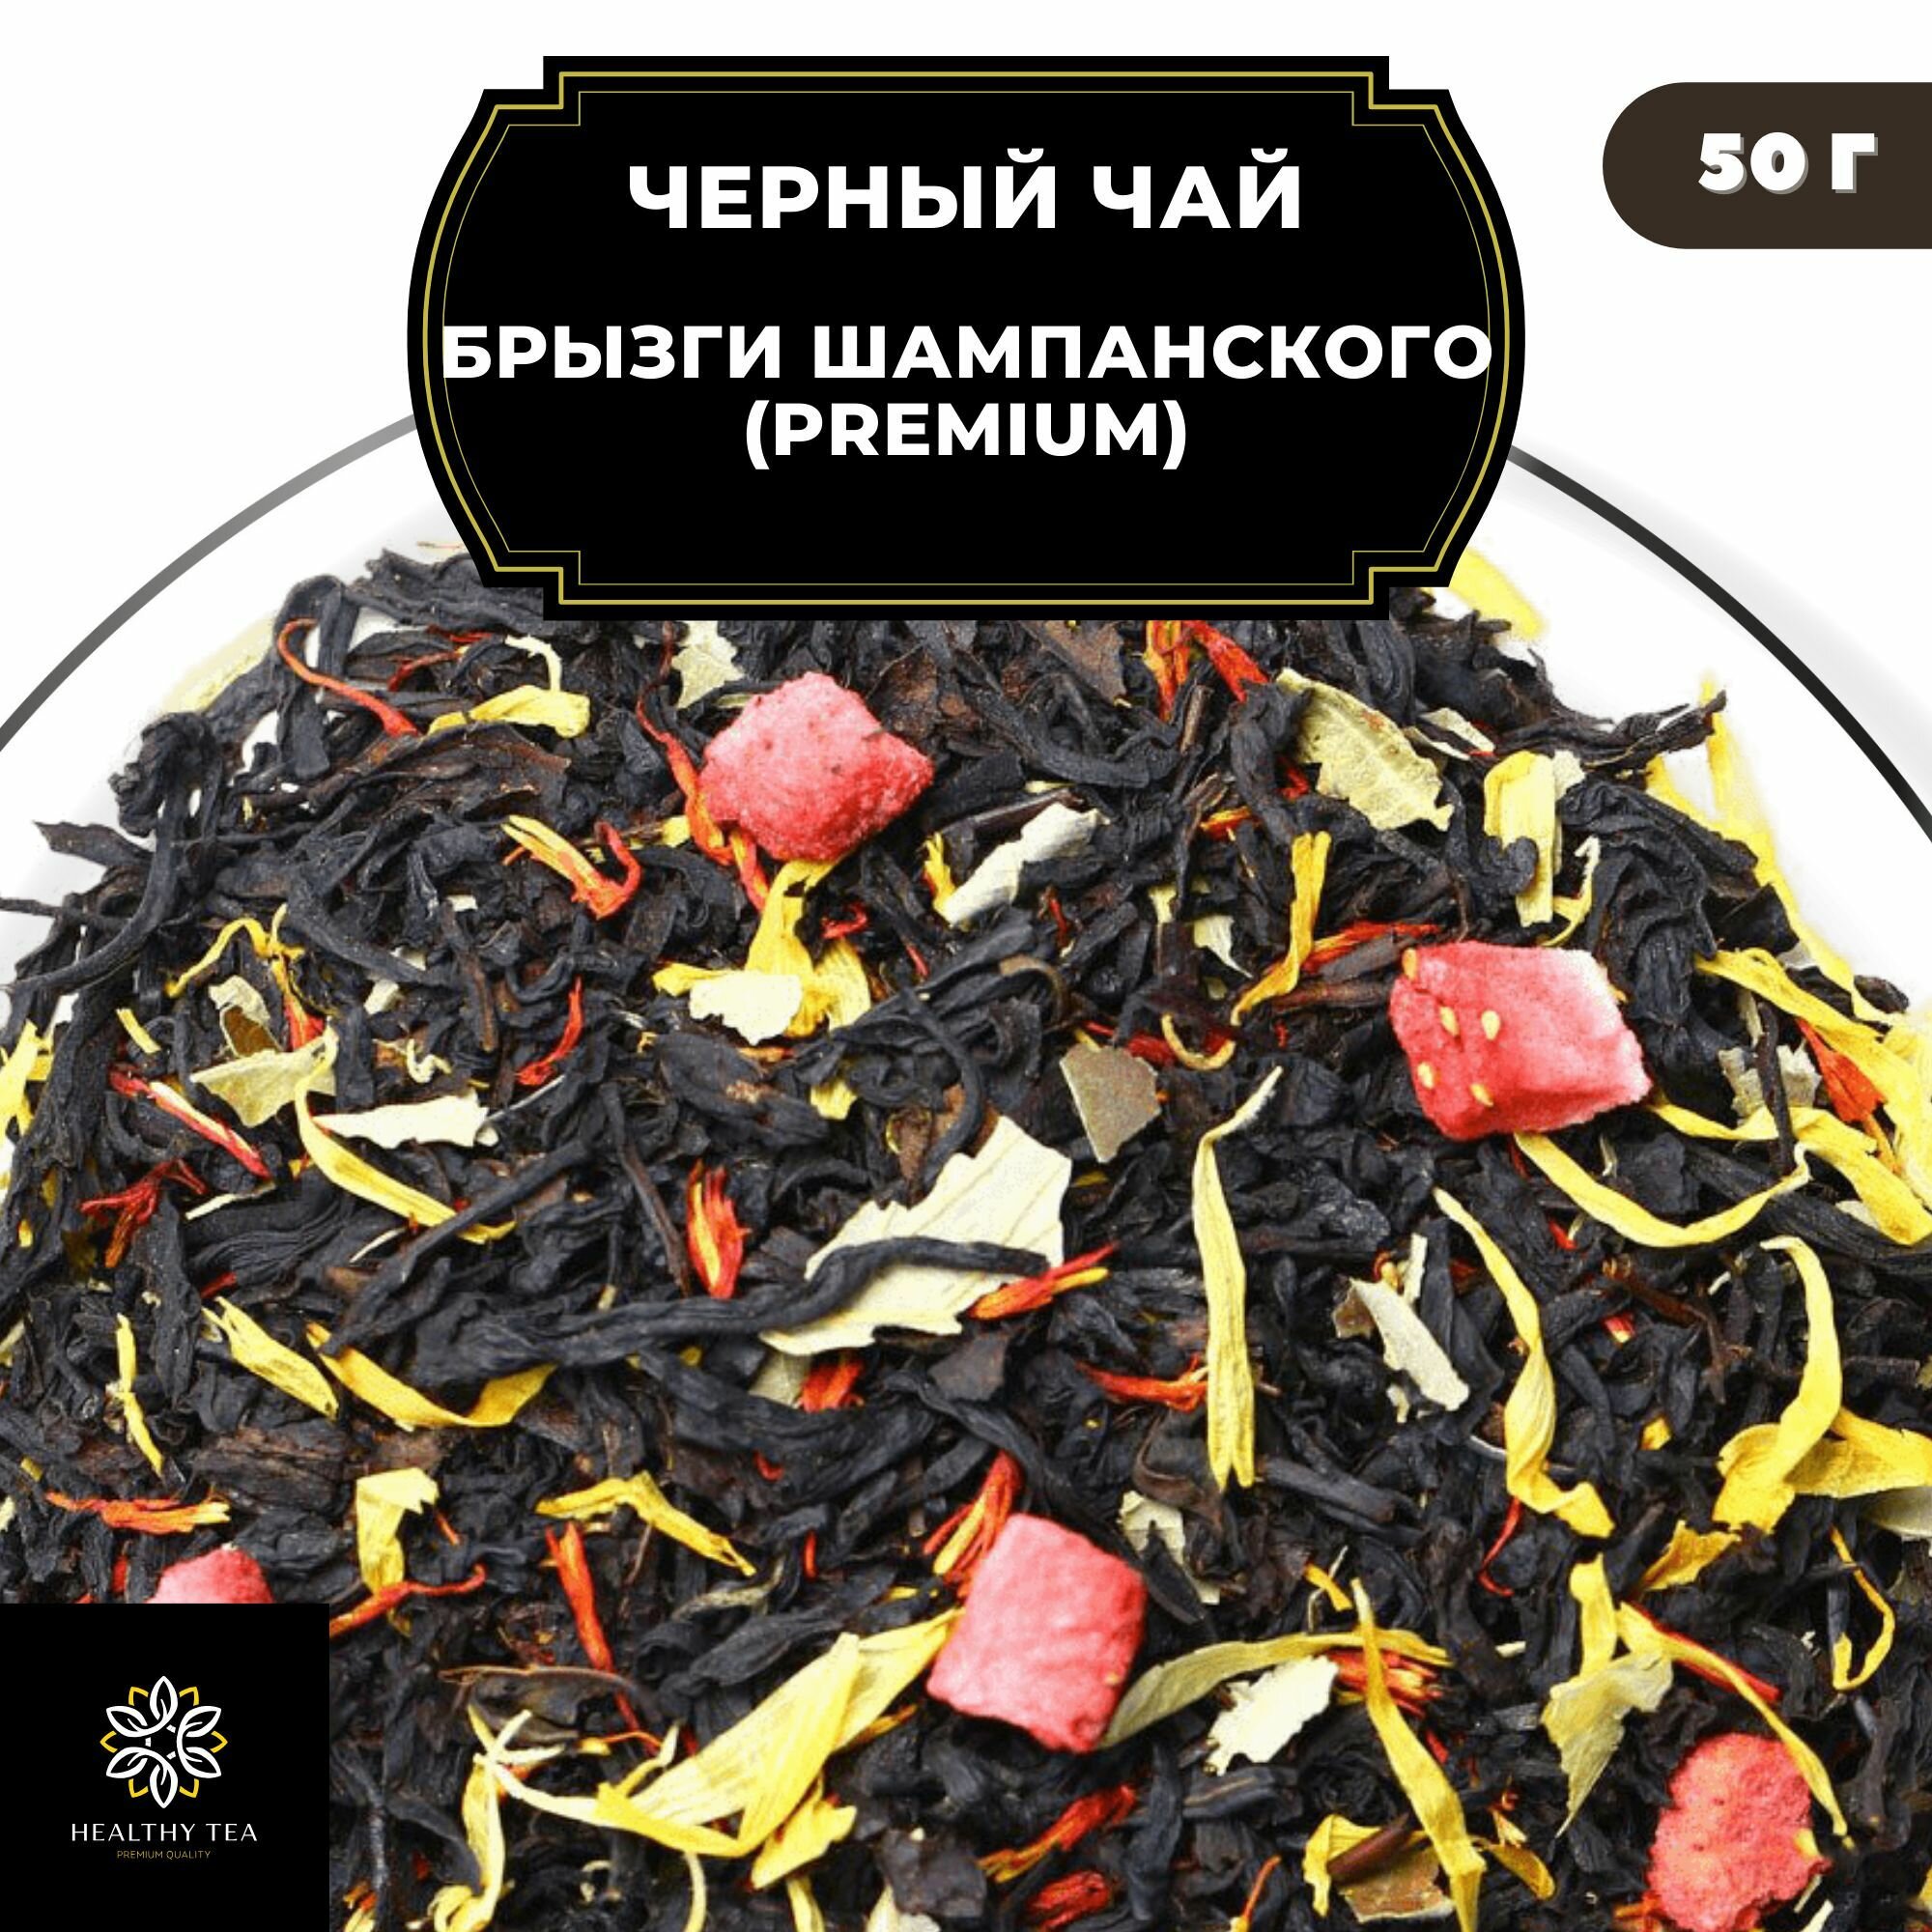 Индийский Черный чай с клубникой, календулой и сафлором "Брызги шампанского" (Premium) Полезный чай / HEALTHY TEA, 50 гр